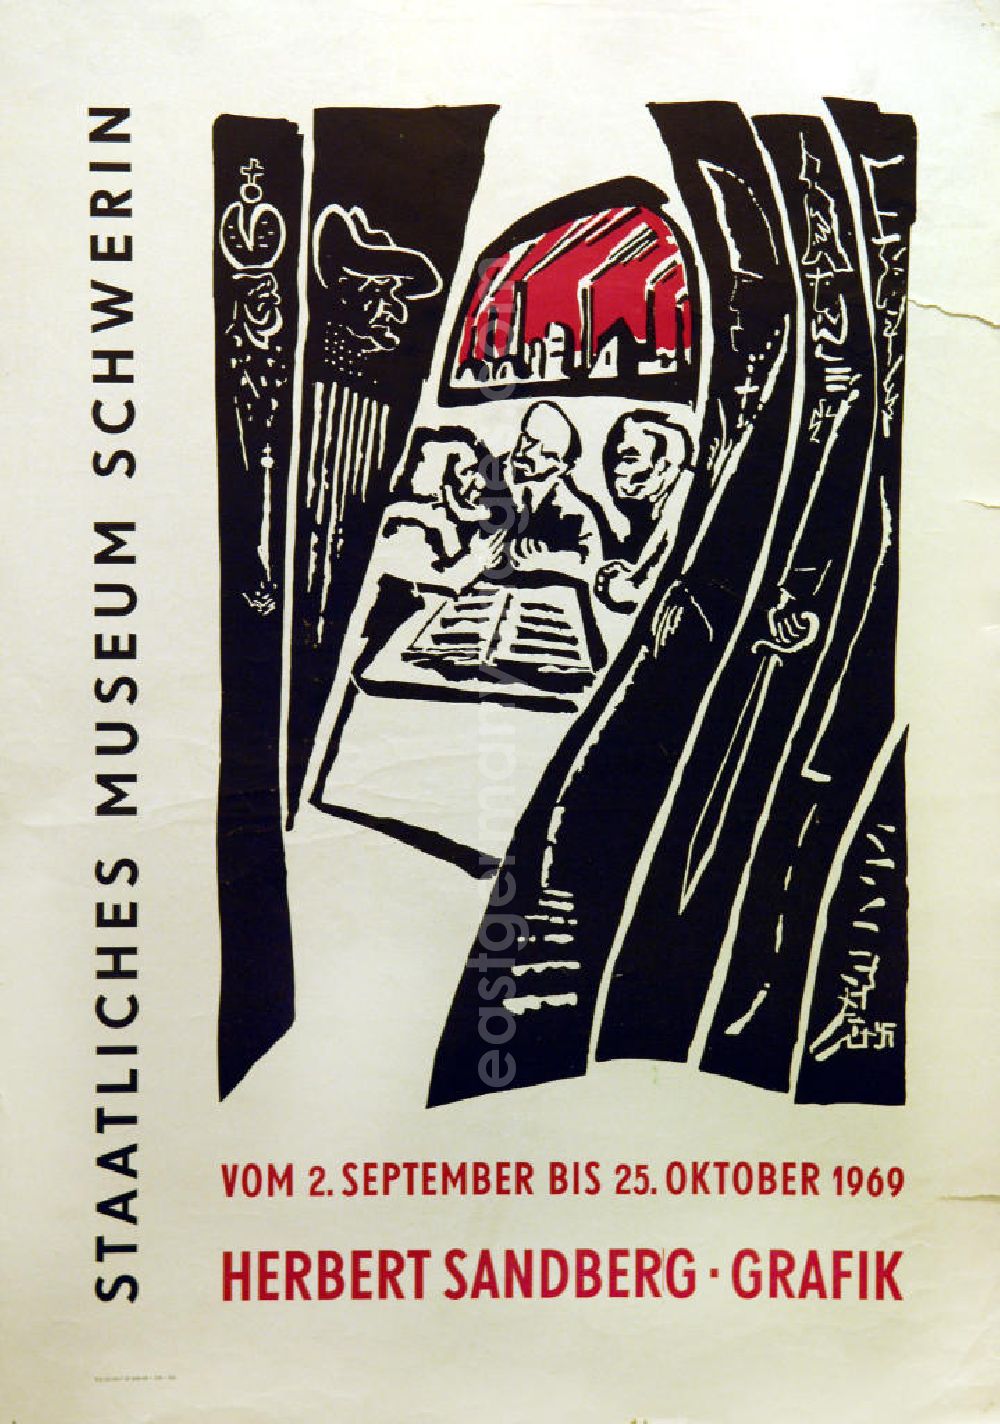 Berlin: Plakat der Ausstellung Herbert Sandberg Grafik vom 02.09.-25.10.1969 staatliches Museum Schwerin, 42,